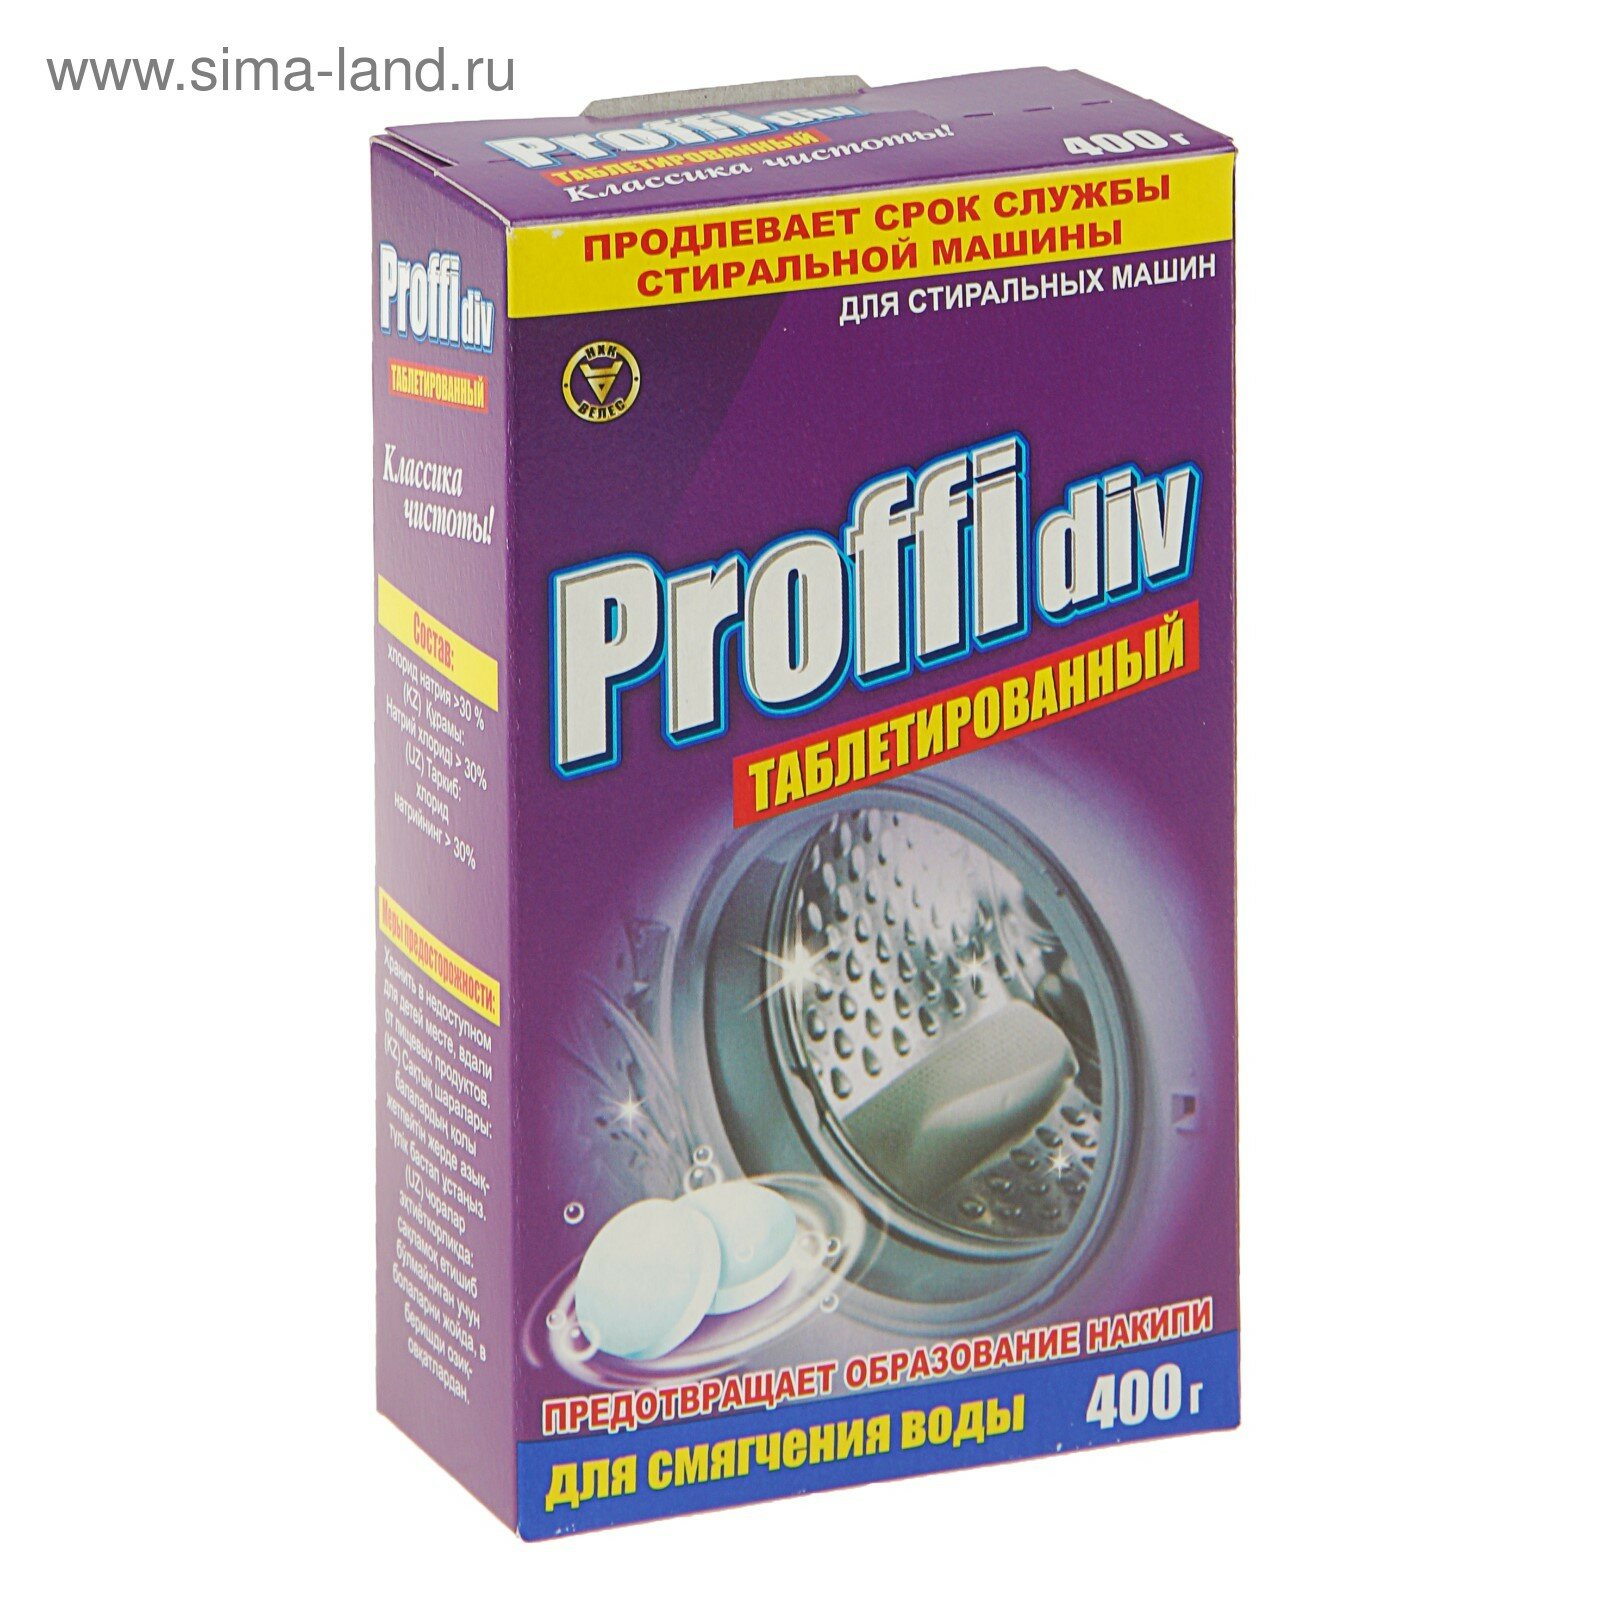 Таблетки для смягчения воды Proffidiv 400 г, для стиральных машин (00-00000012)